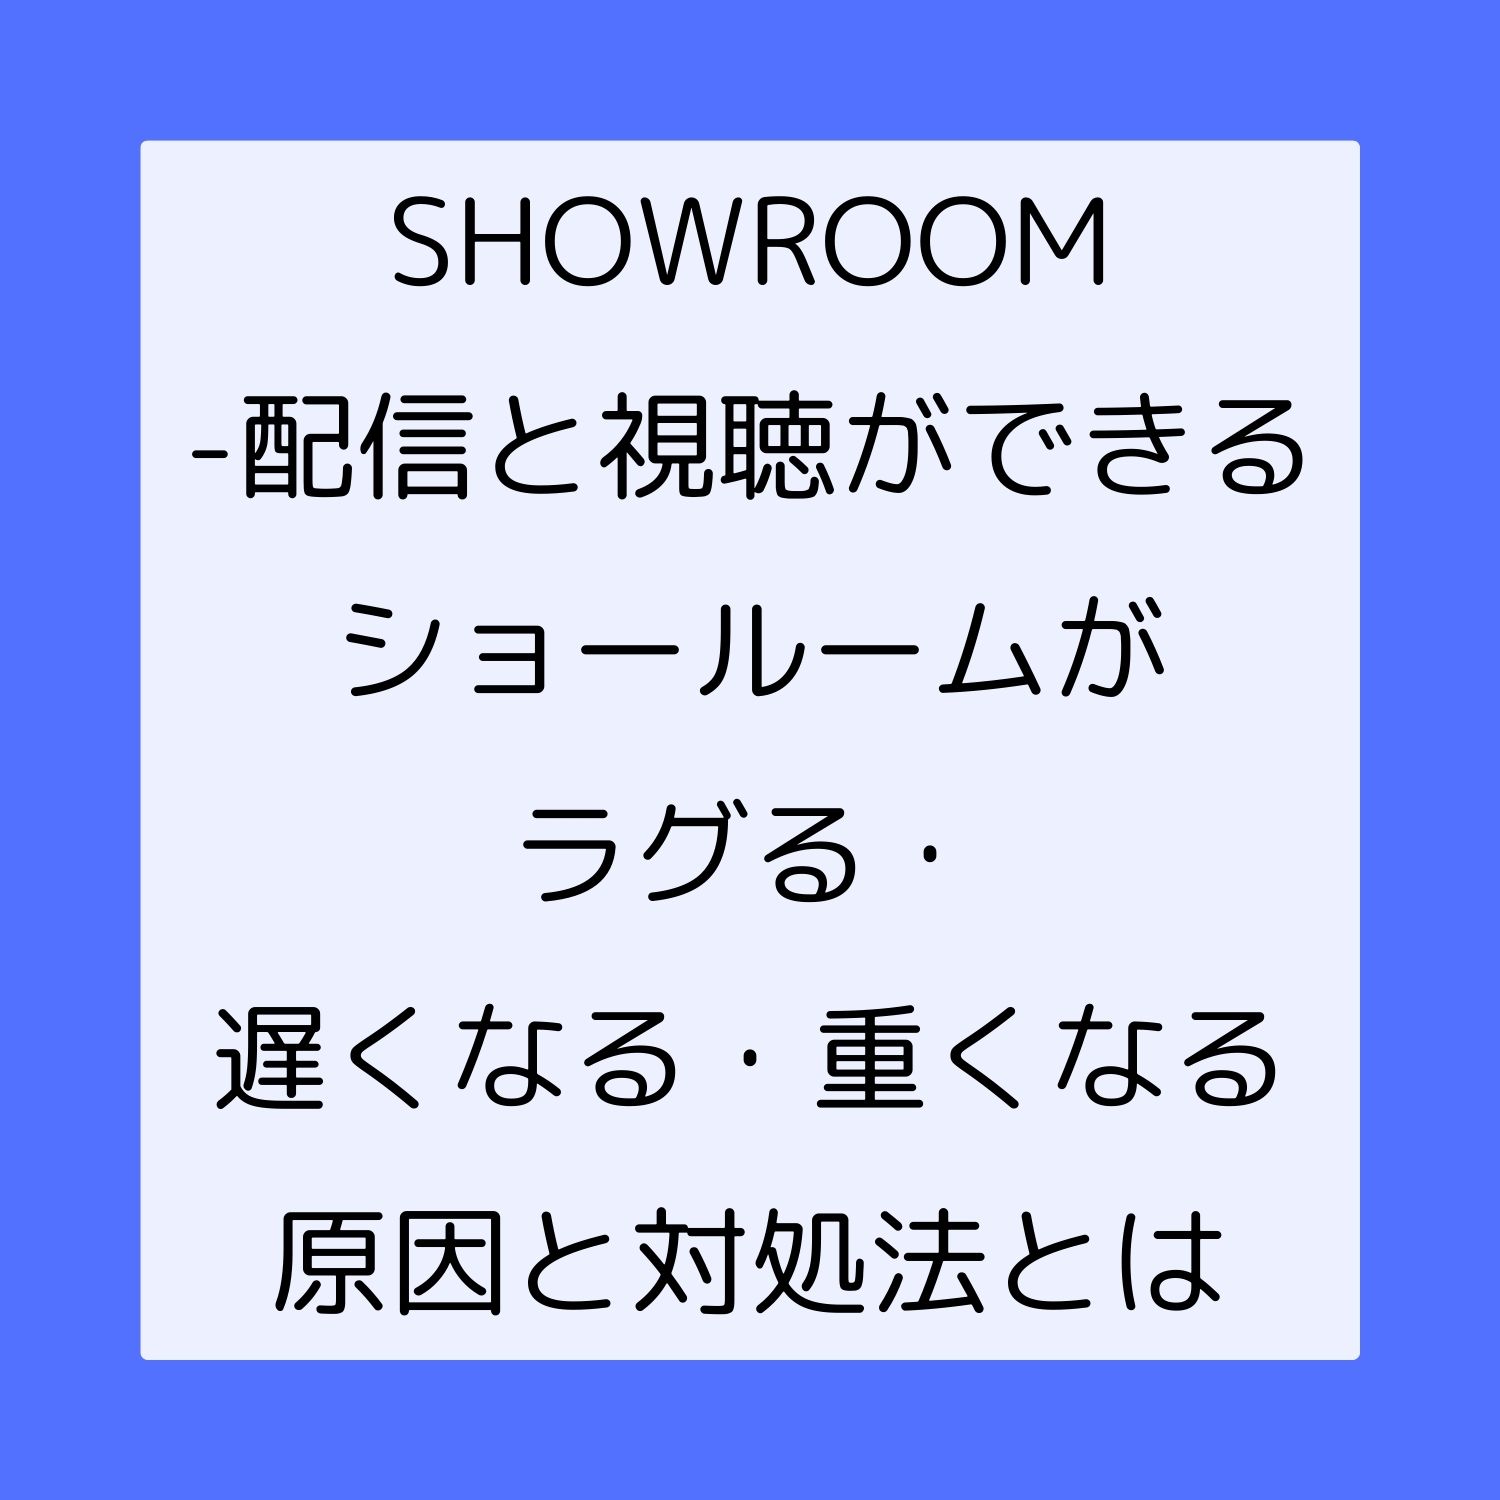 SHOWROOM - 配信と視聴ができるショールームがラグる・遅くなる・重くなる原因と対処法とは #SHOWROOM - 配信と視聴ができるショールーム